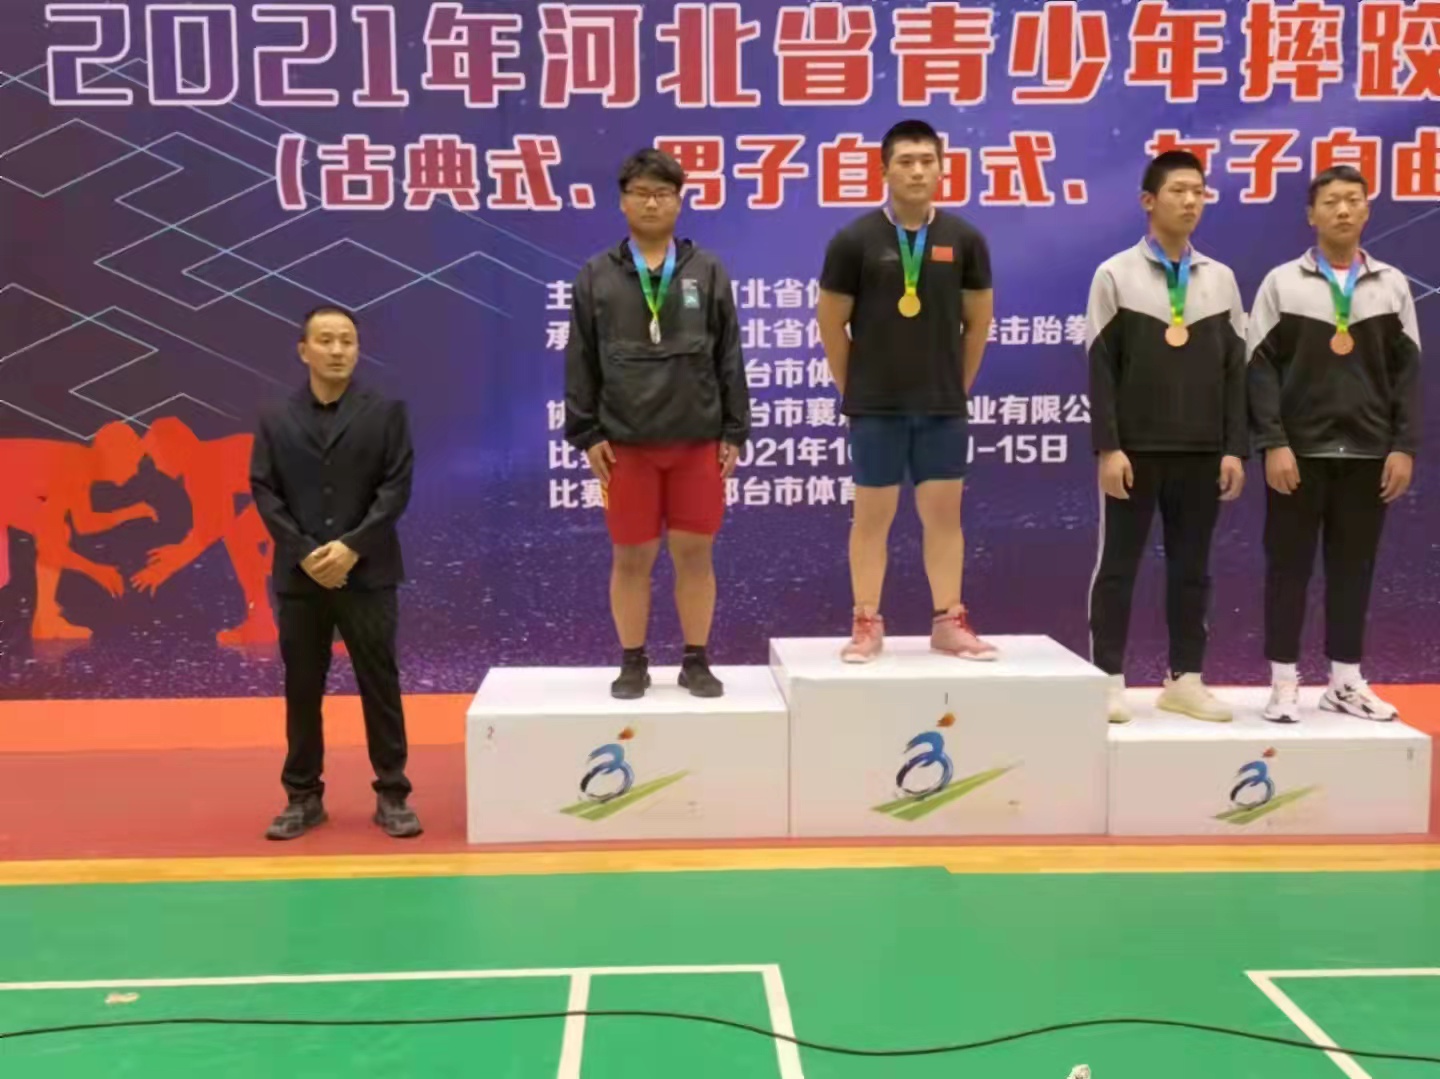 我校运动员在河北省青少年摔跤锦标赛中 获1金、1银、5铜